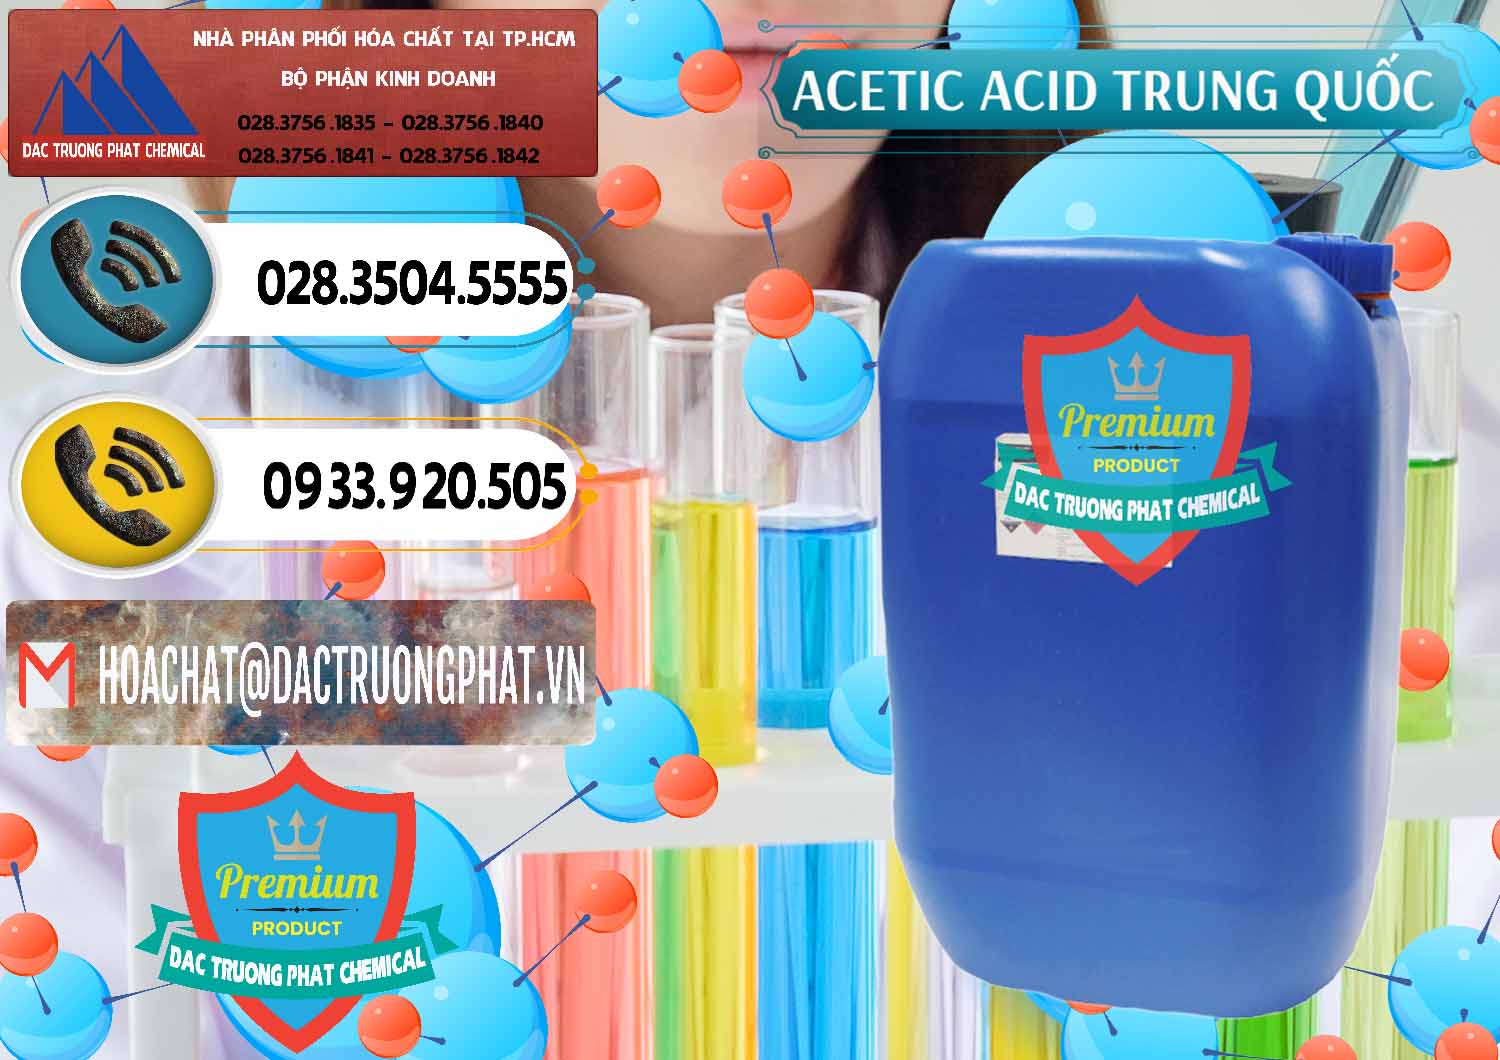 Chuyên bán ( cung ứng ) Acetic Acid – Axit Acetic Trung Quốc China - 0358 - Đơn vị chuyên phân phối - nhập khẩu hóa chất tại TP.HCM - hoachatdetnhuom.vn